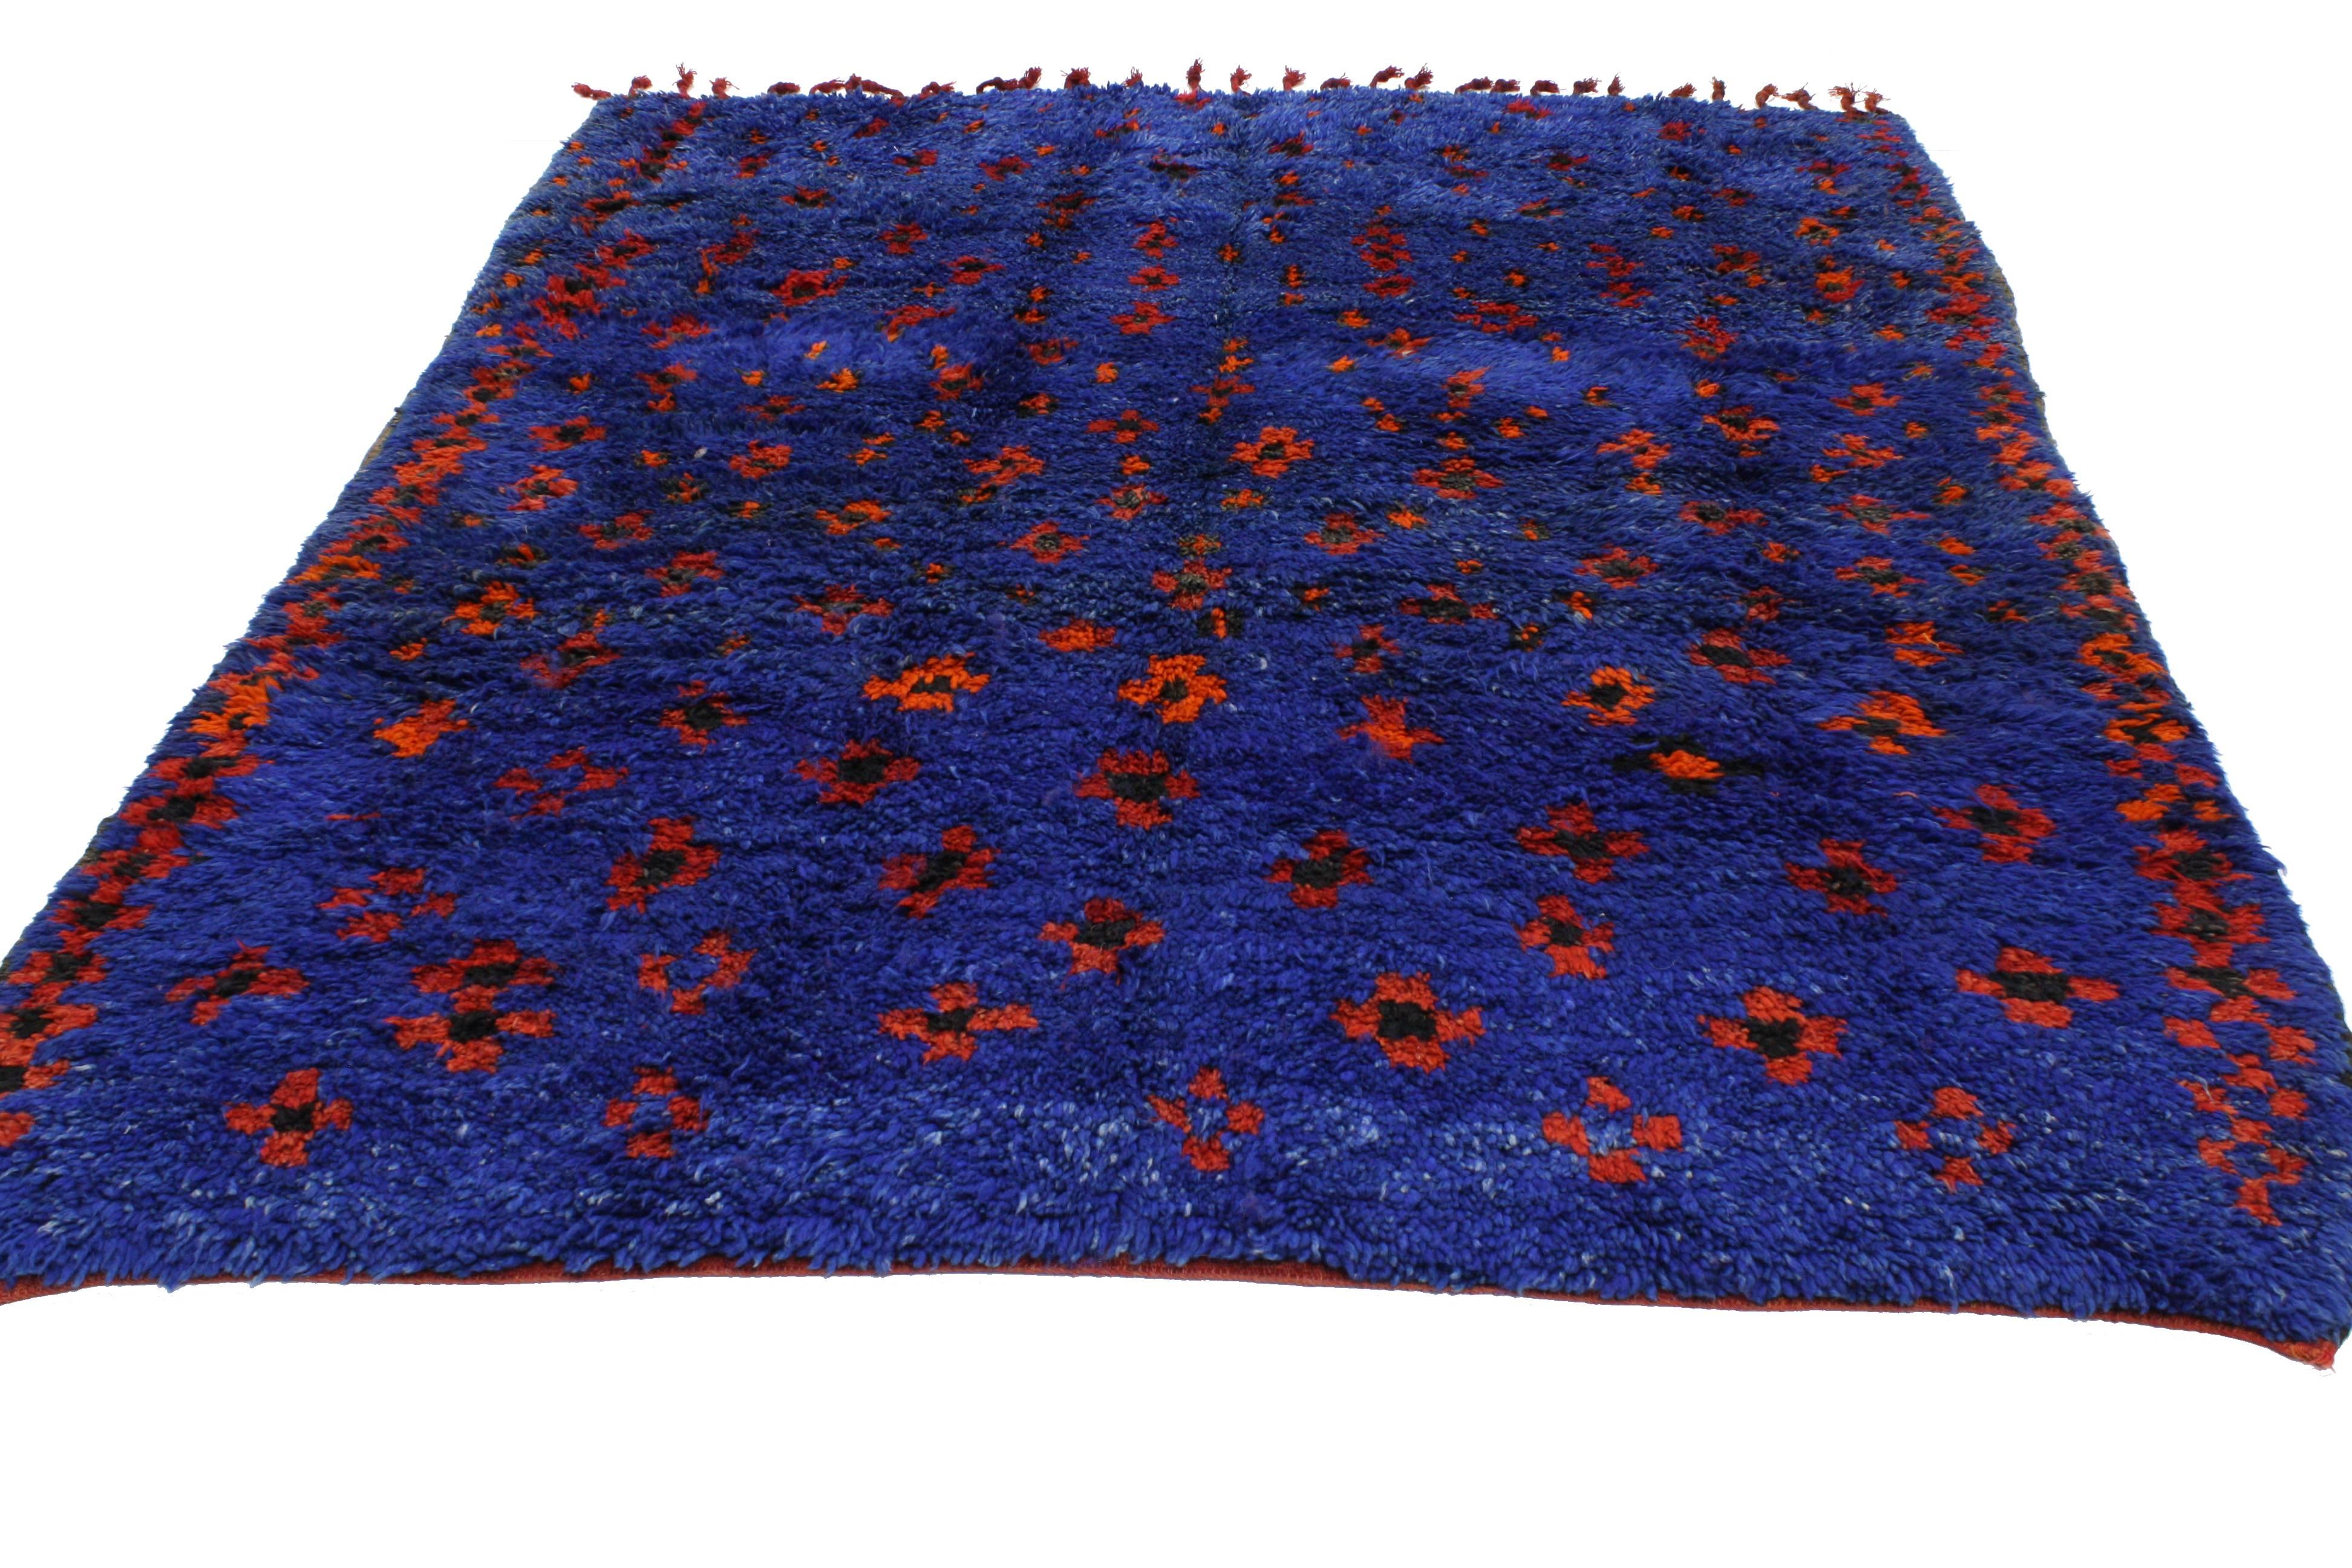 Wool Mid-Century Modern Berber Moroccan Rug in Cobalt Blue